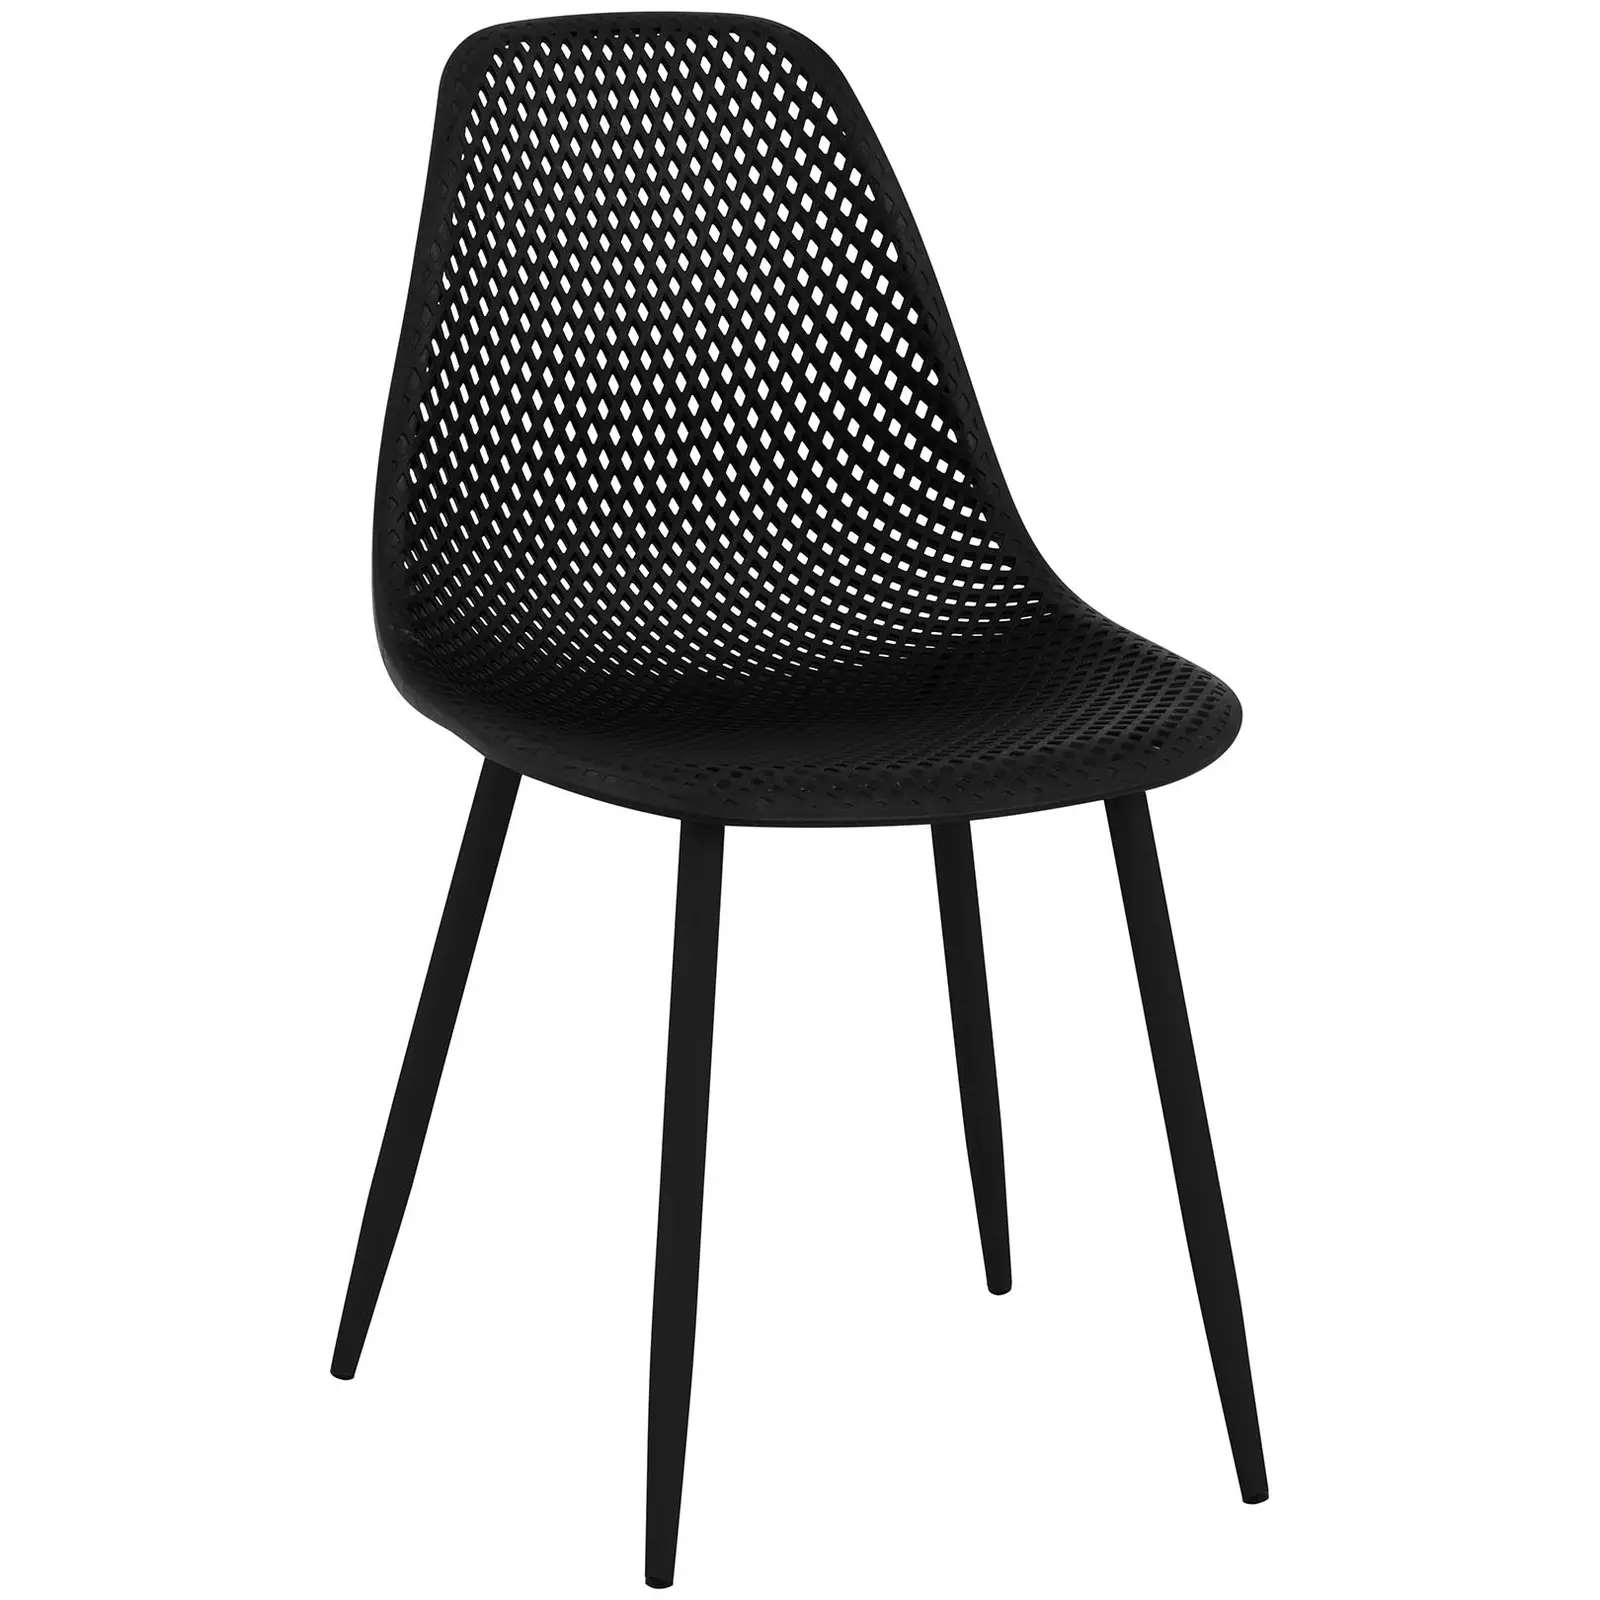 Стол - комплект от 4 броя - до 150 кг - седалка 52 x 46,5 см - черен